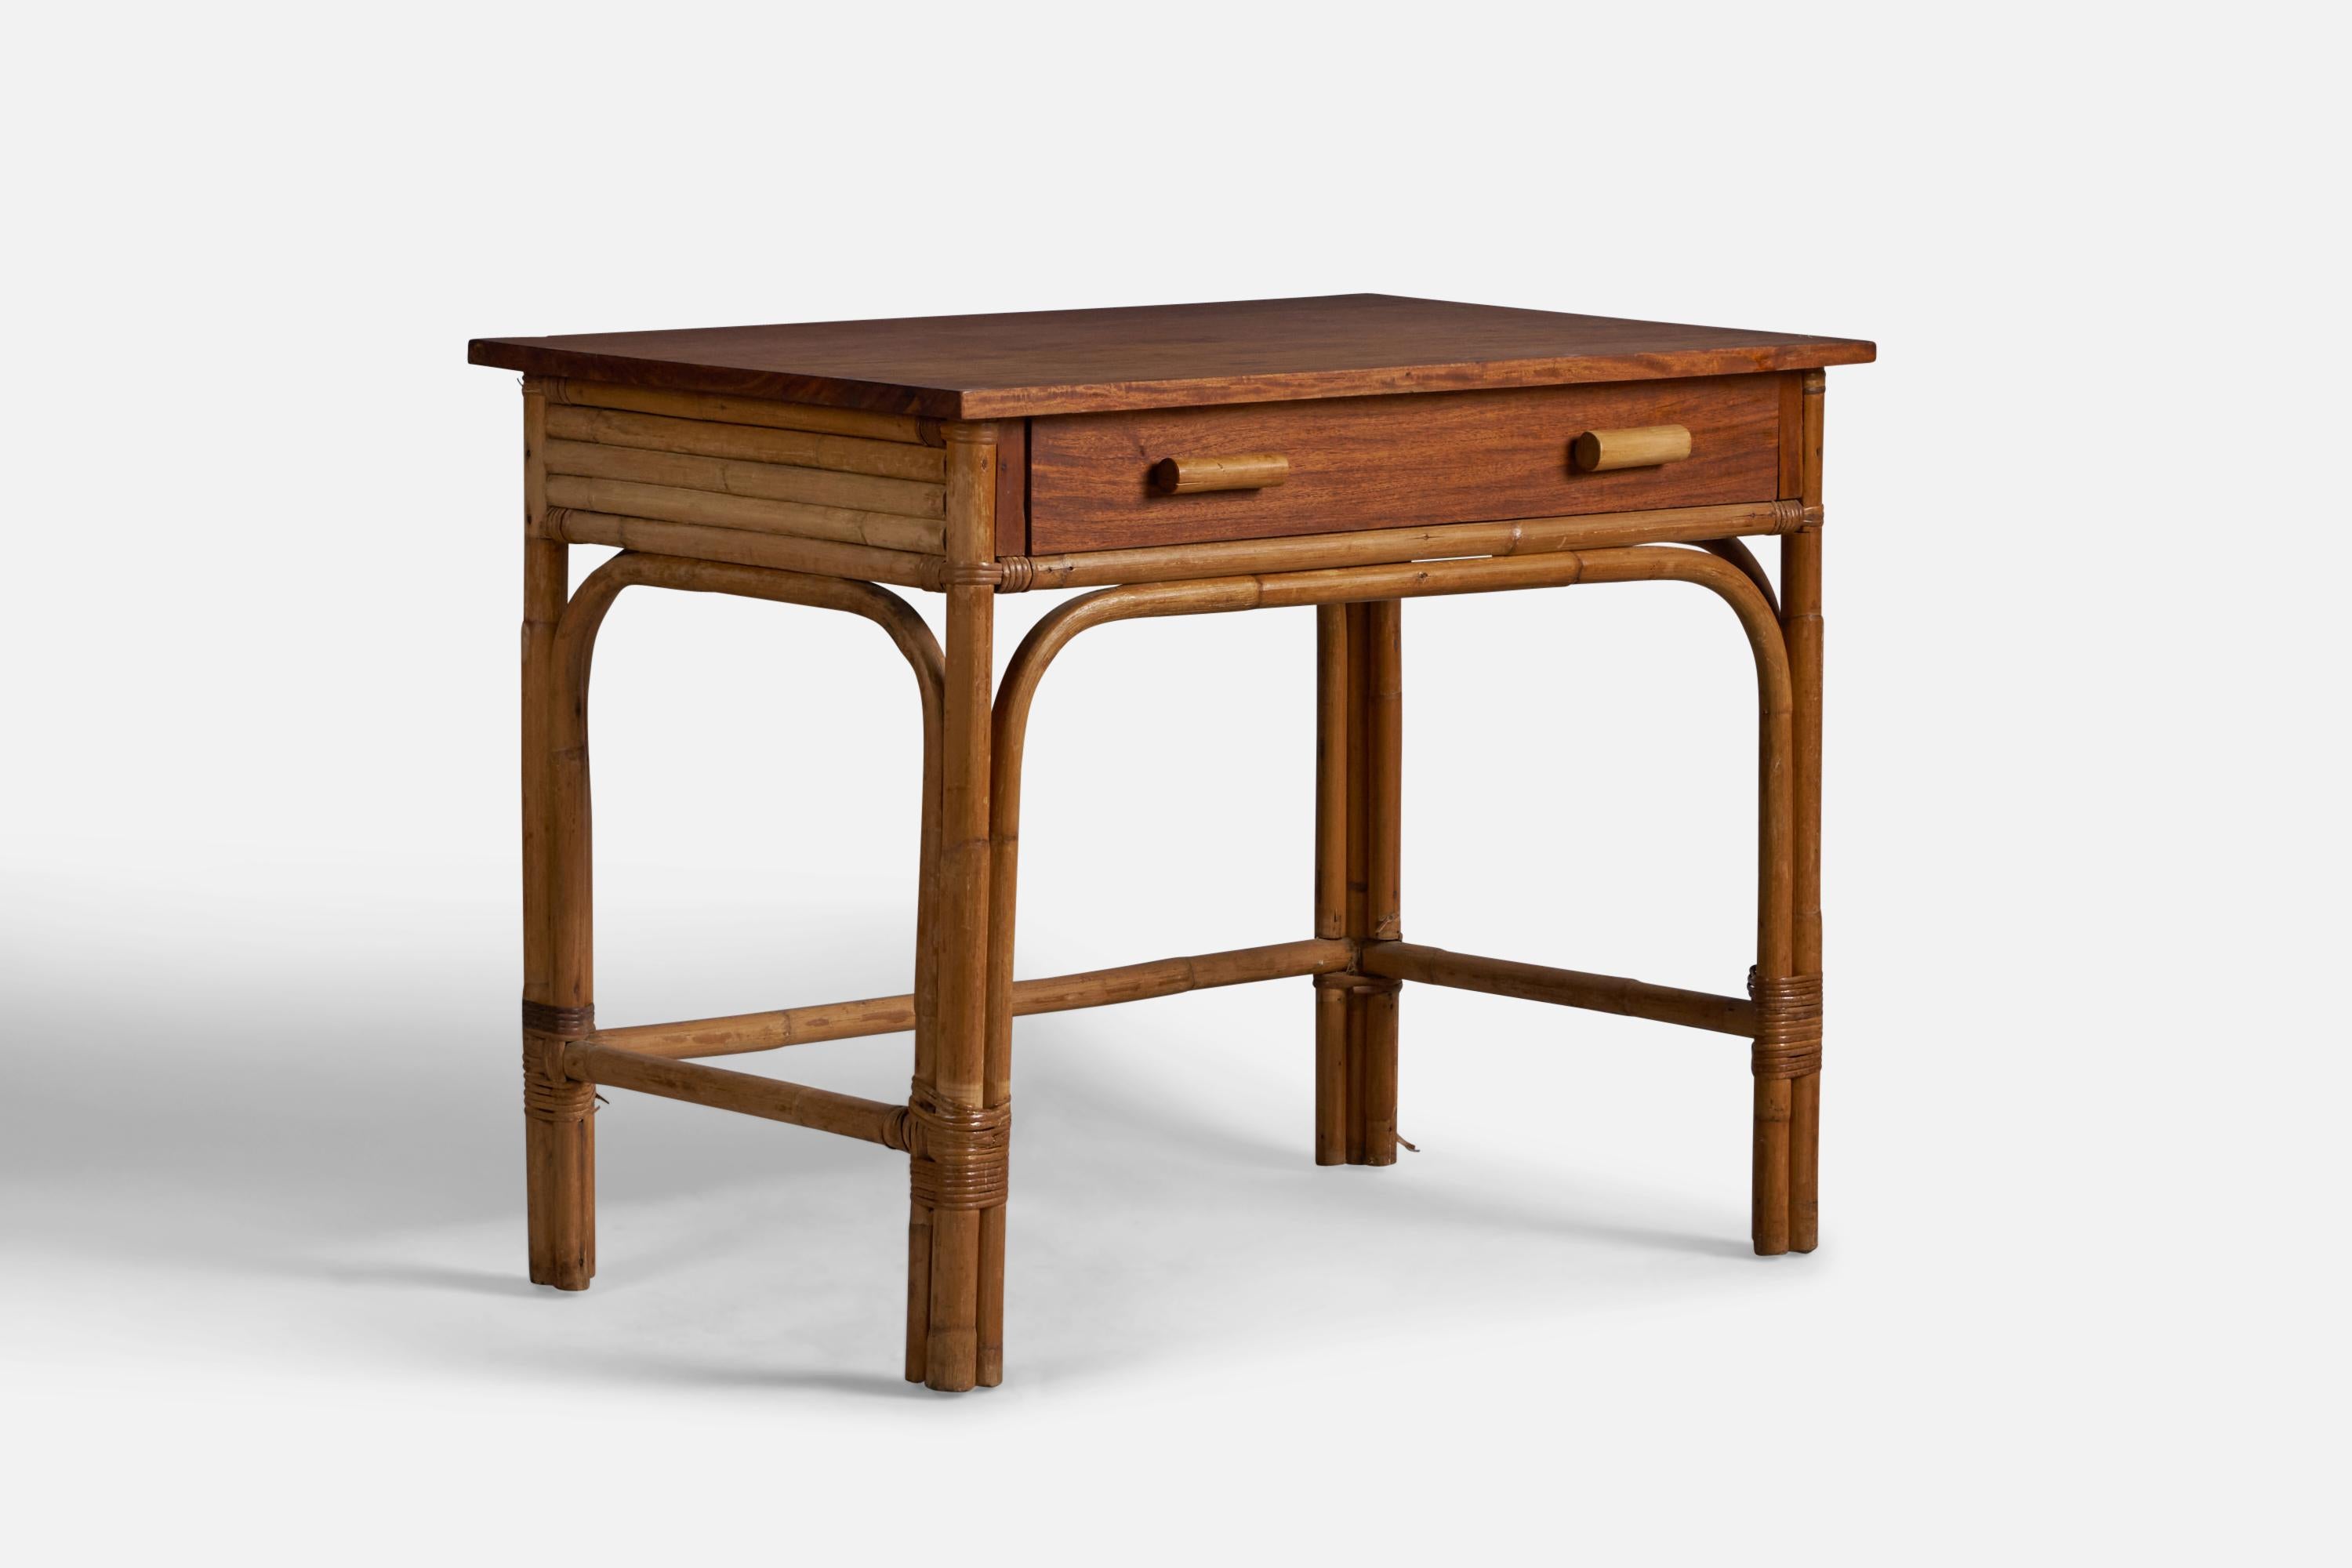 Kleiner Schreibtisch aus Eiche, Bambus und Rattan, entworfen und hergestellt in den USA, ca. 1950er Jahre.